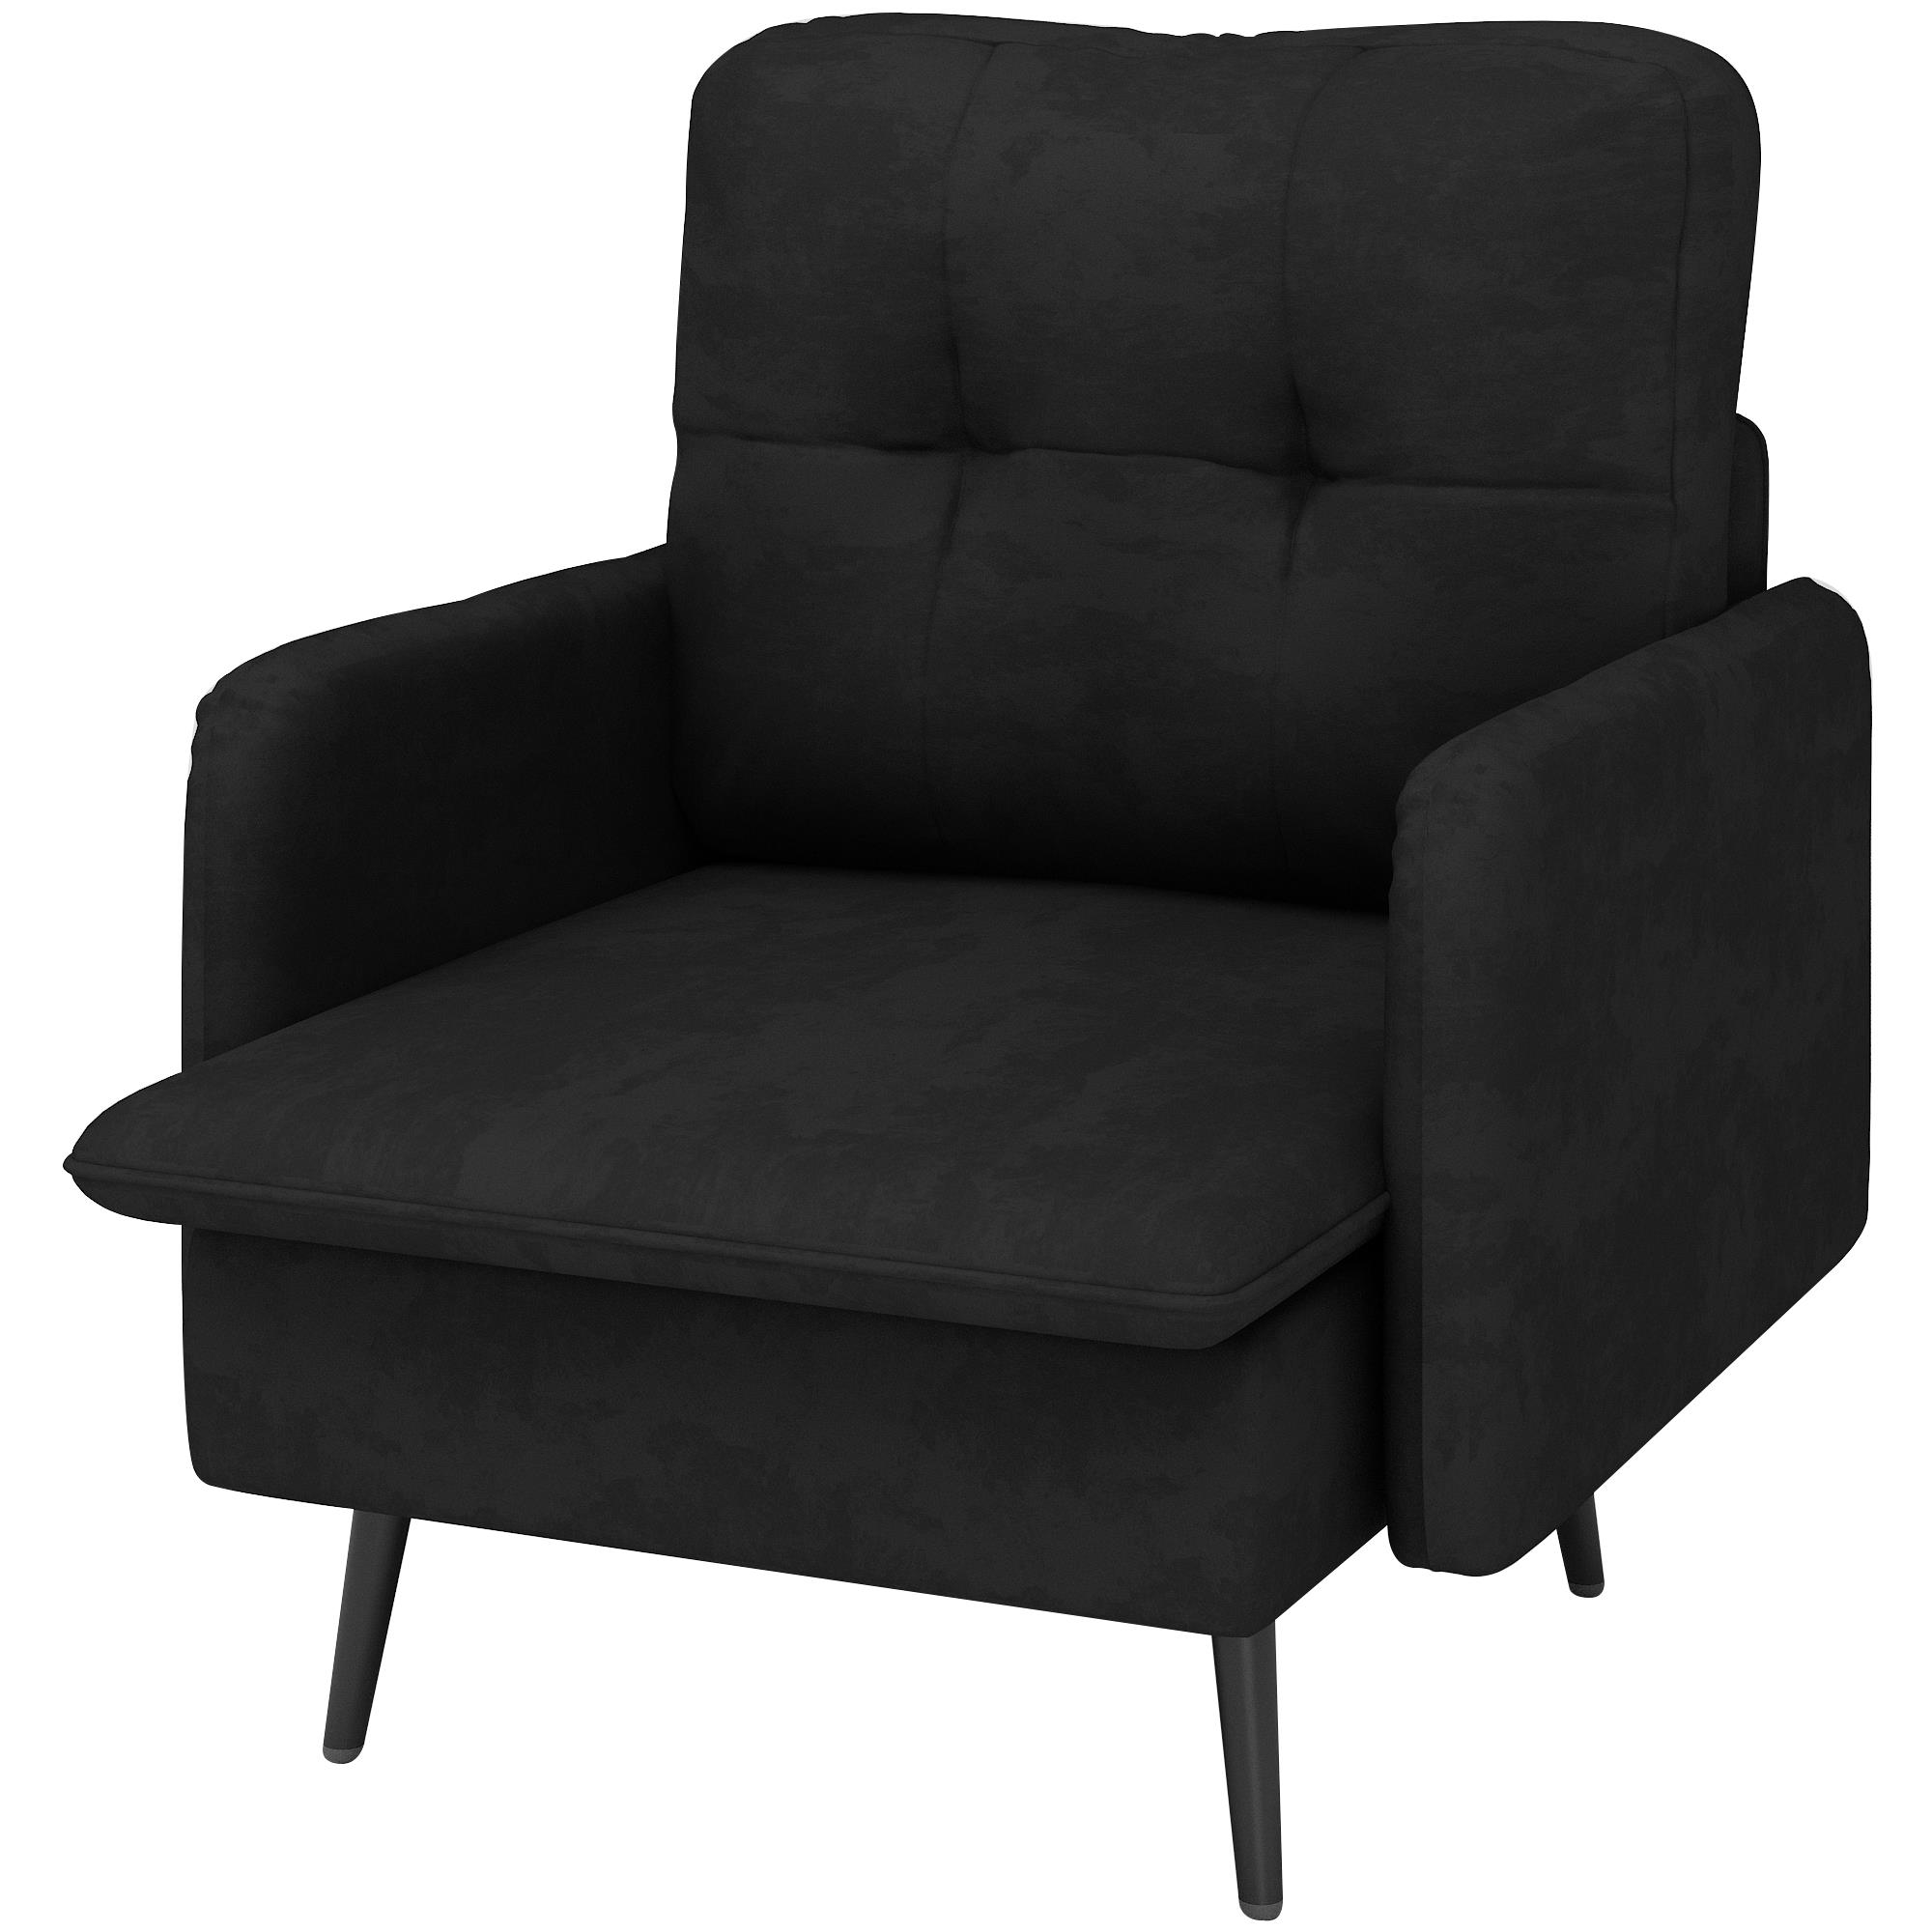 כורסא מעוצבת יוקרתית לבית דגם ריו בד צבע שחור